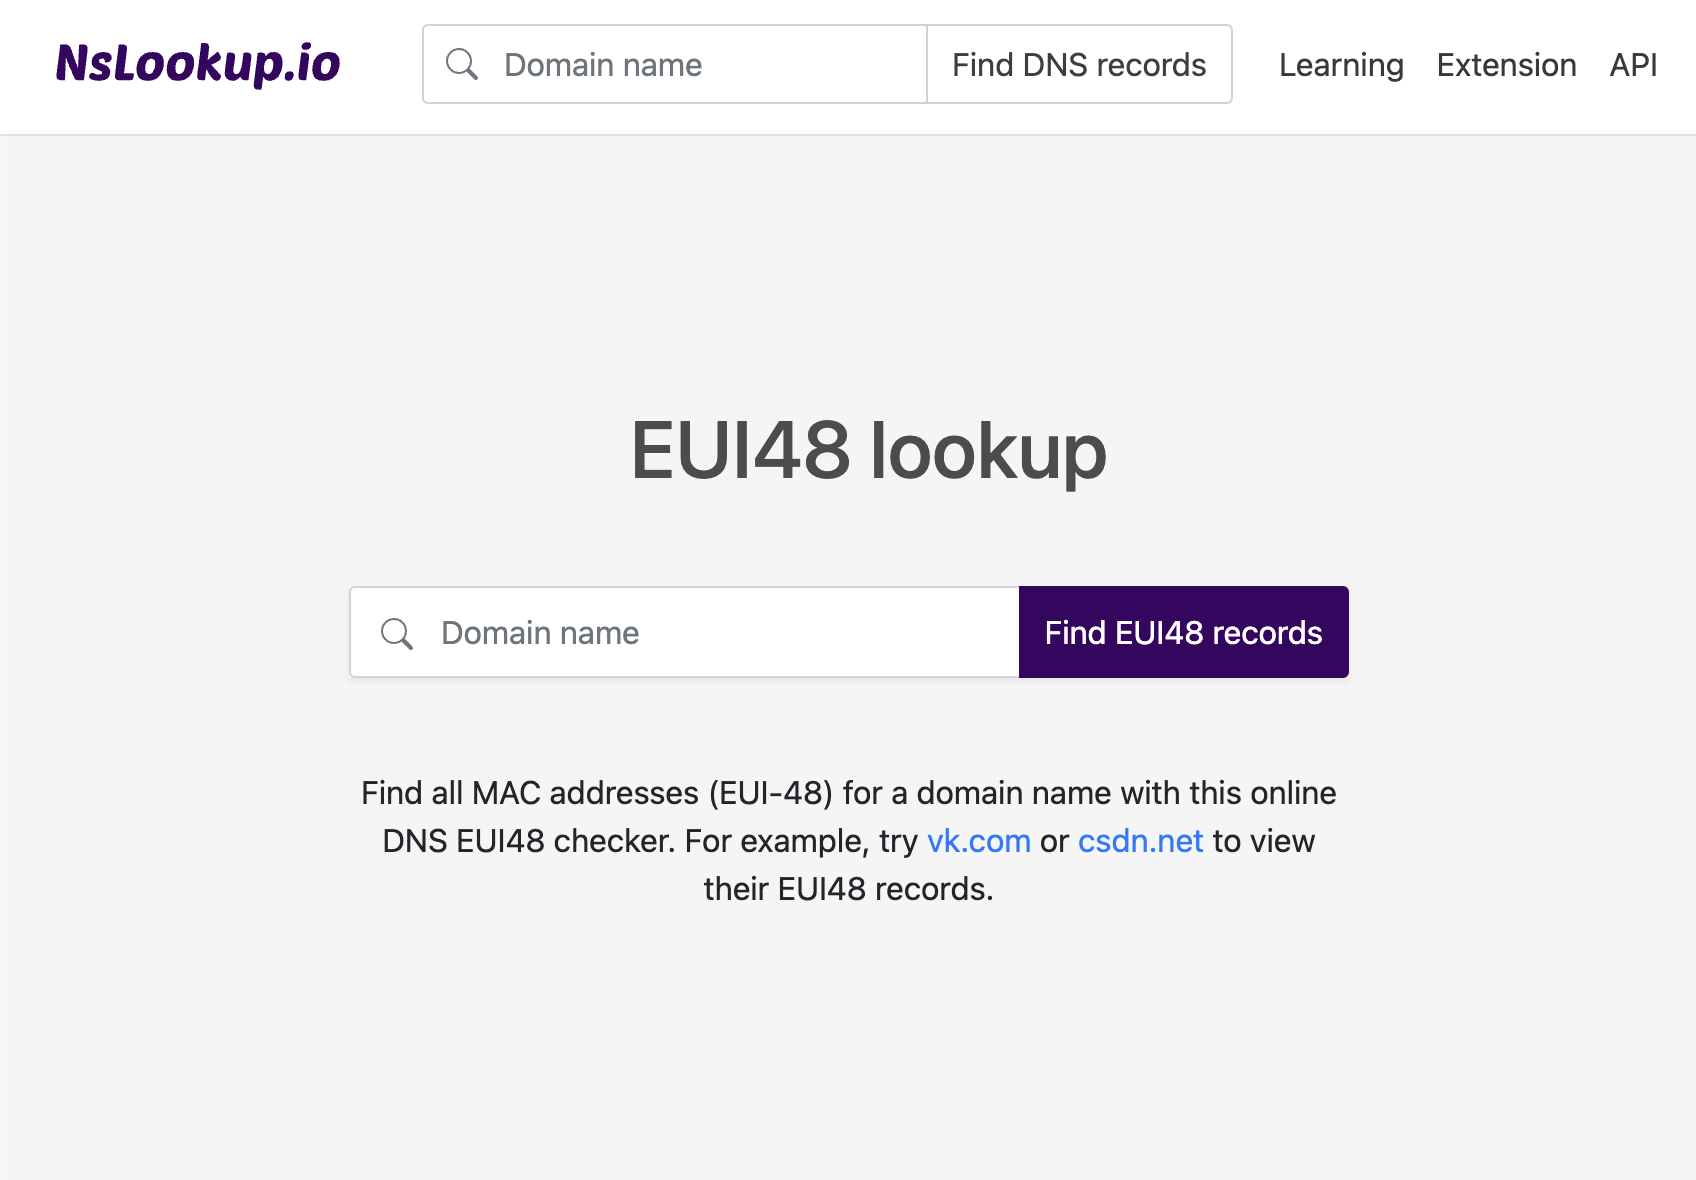 Open the EUI48 lookup tool